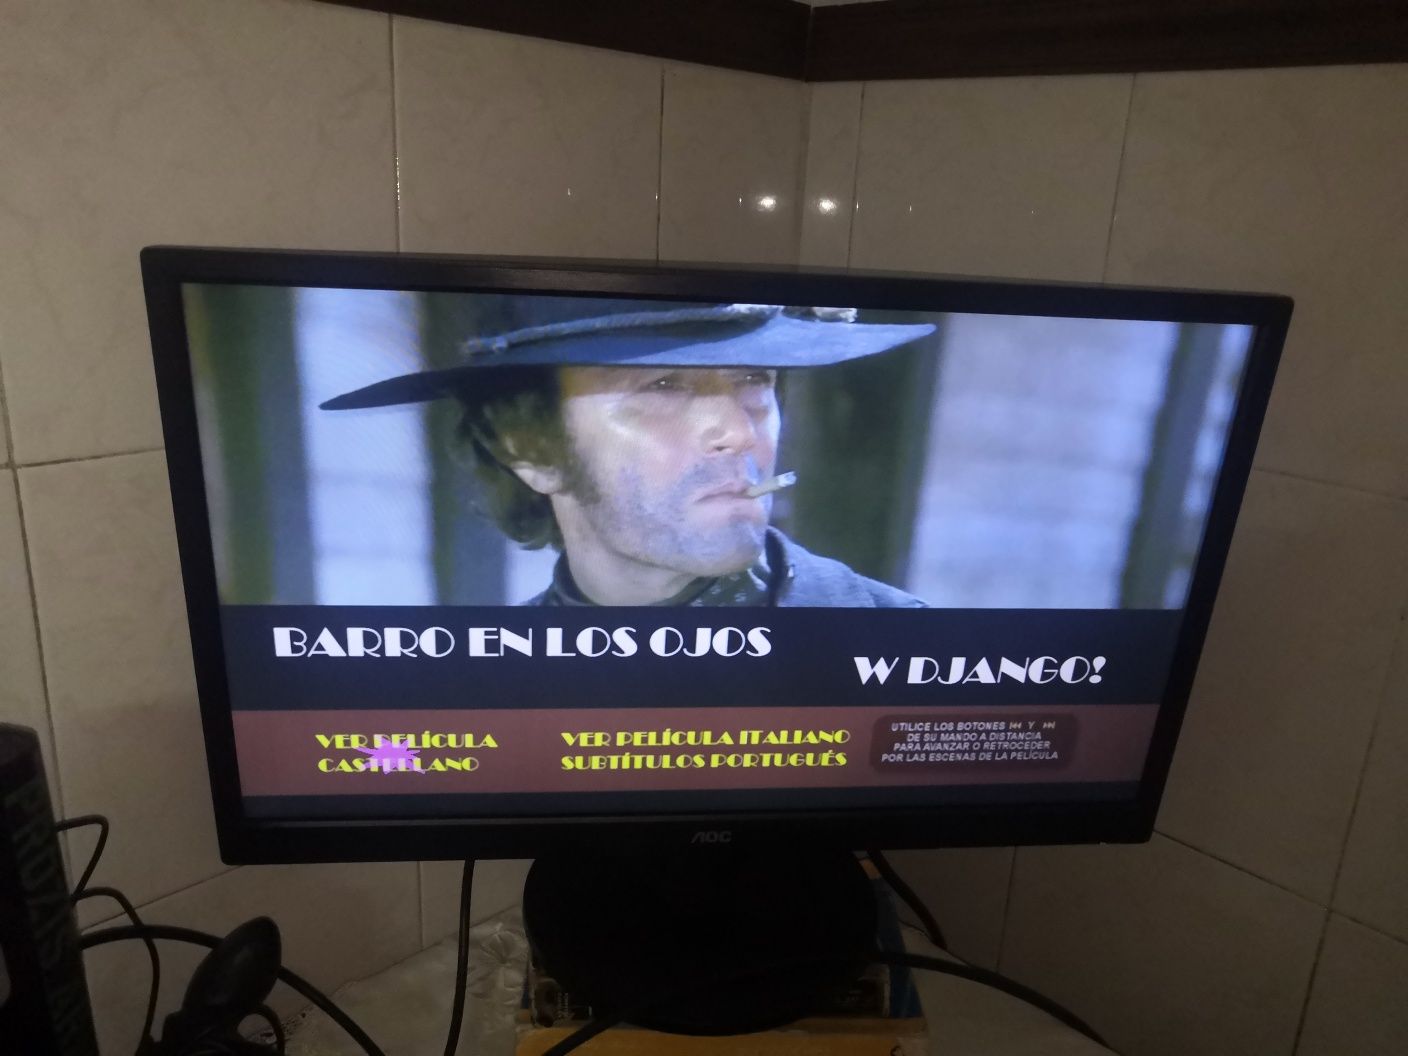 Django Collection_4 Filmes Cowboys Italianos